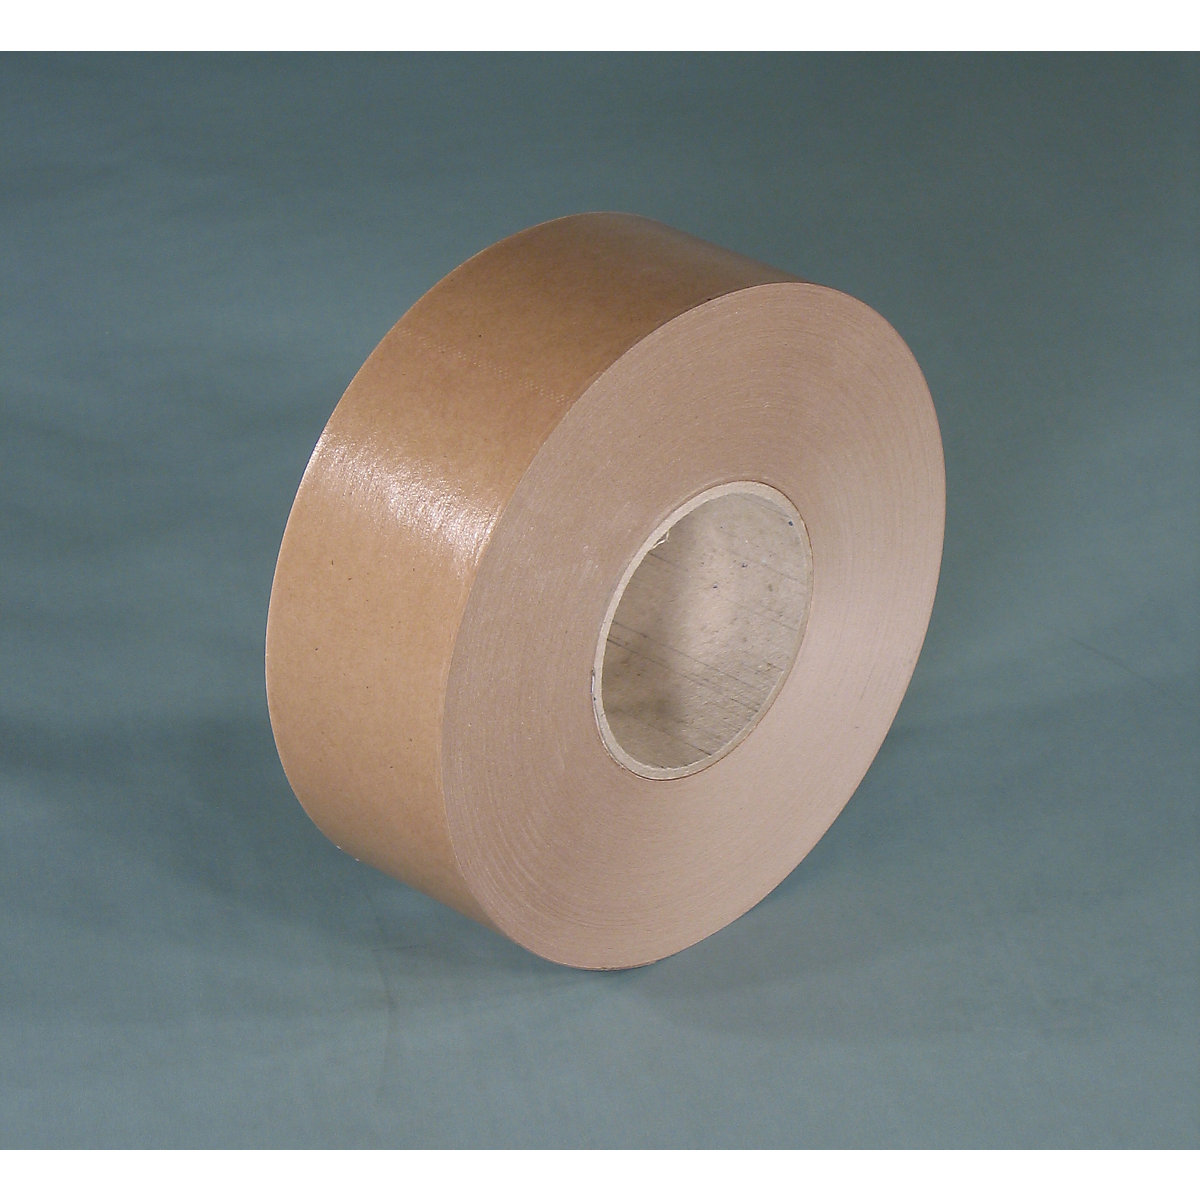 Gummed tape – eurokraft basic, basic model, pack of 12 rolls, brown, tape width 60 mm-3